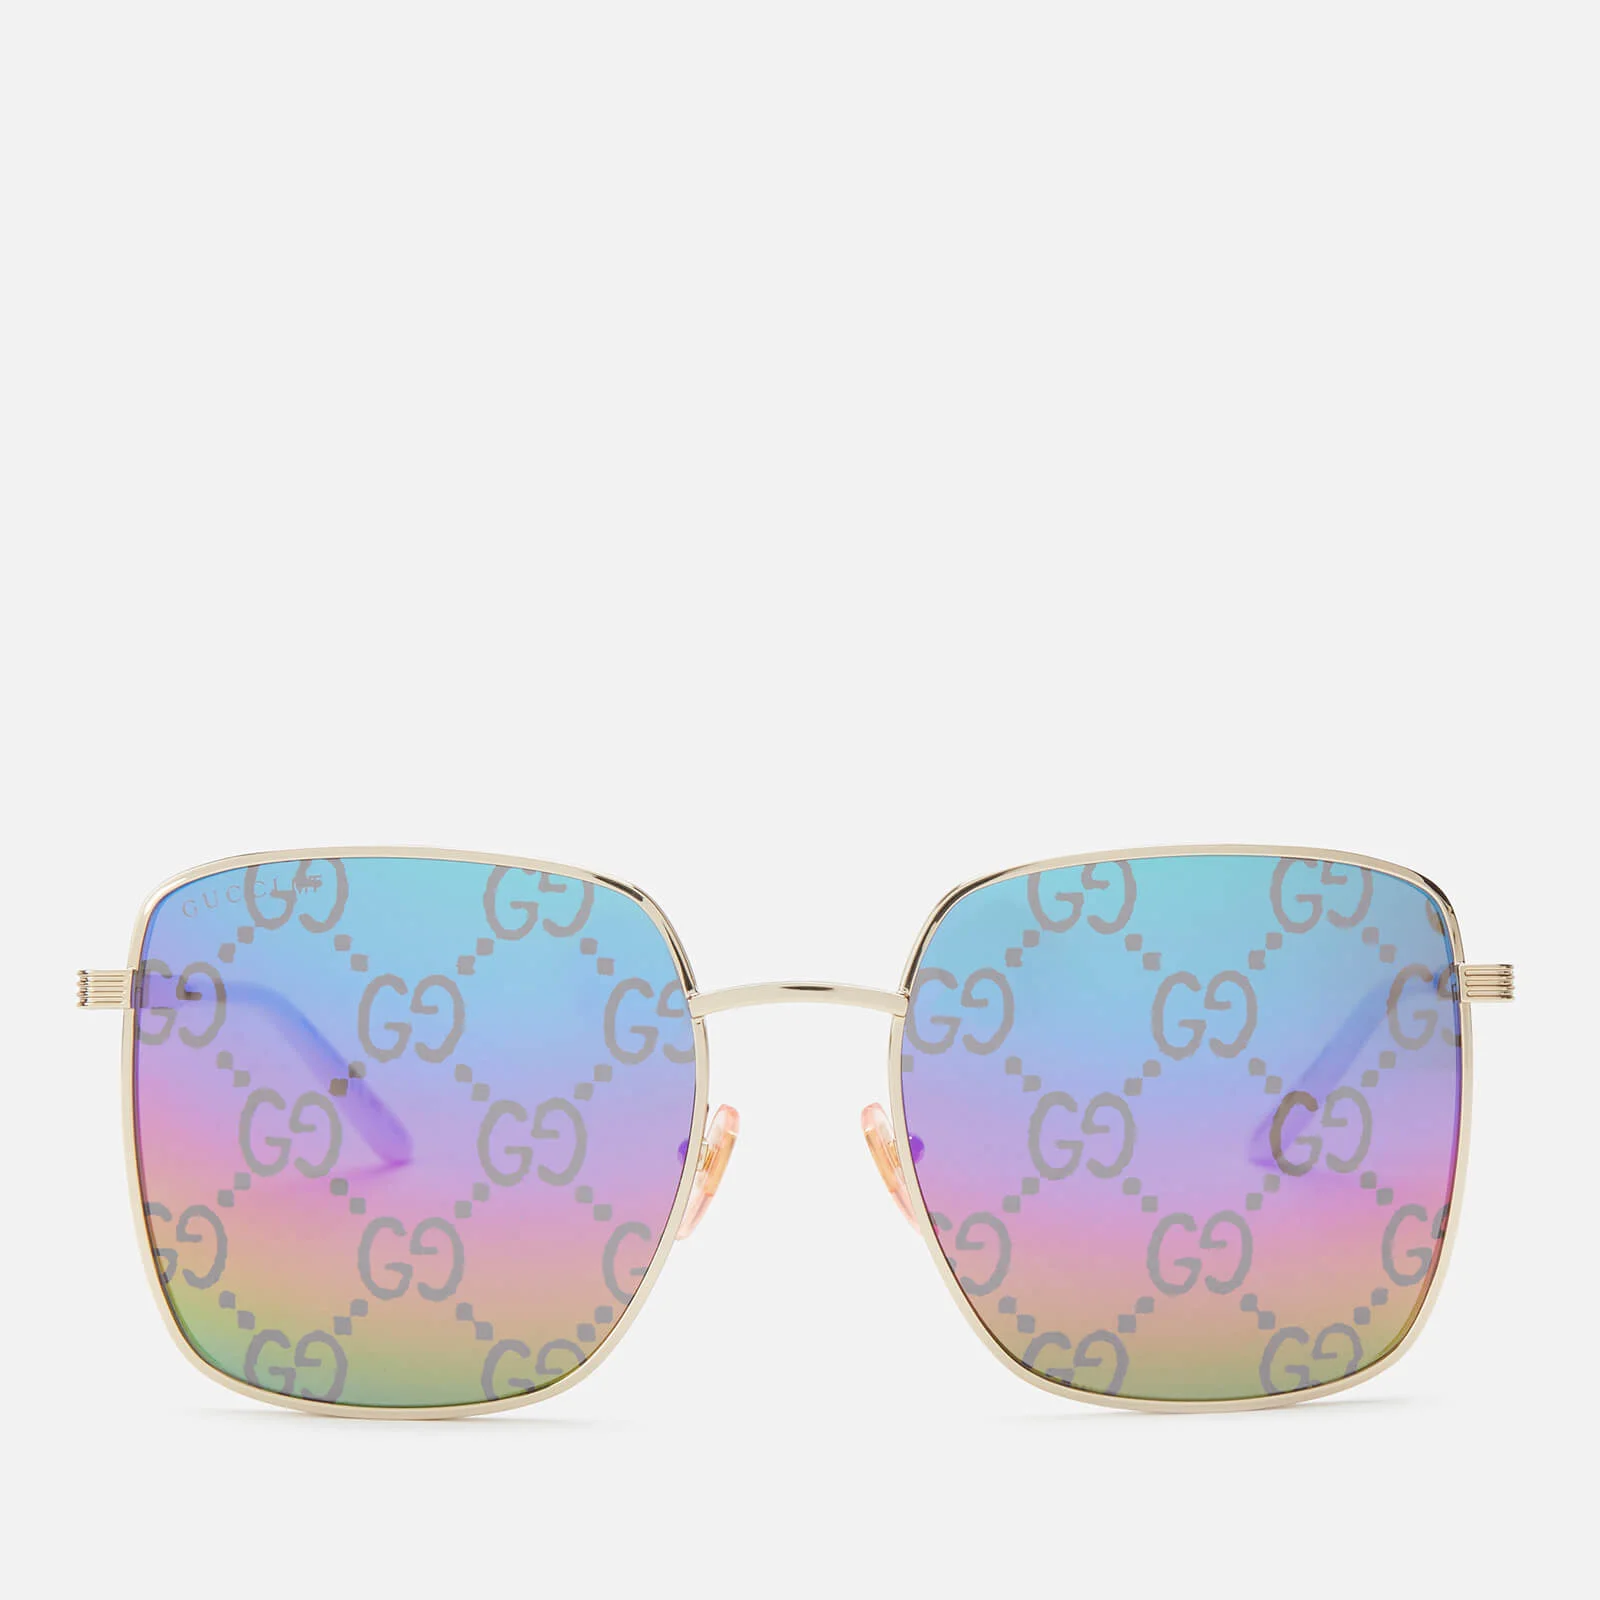 Gucci Women's Monogram Sunglasses - Gold/Multi Image 1